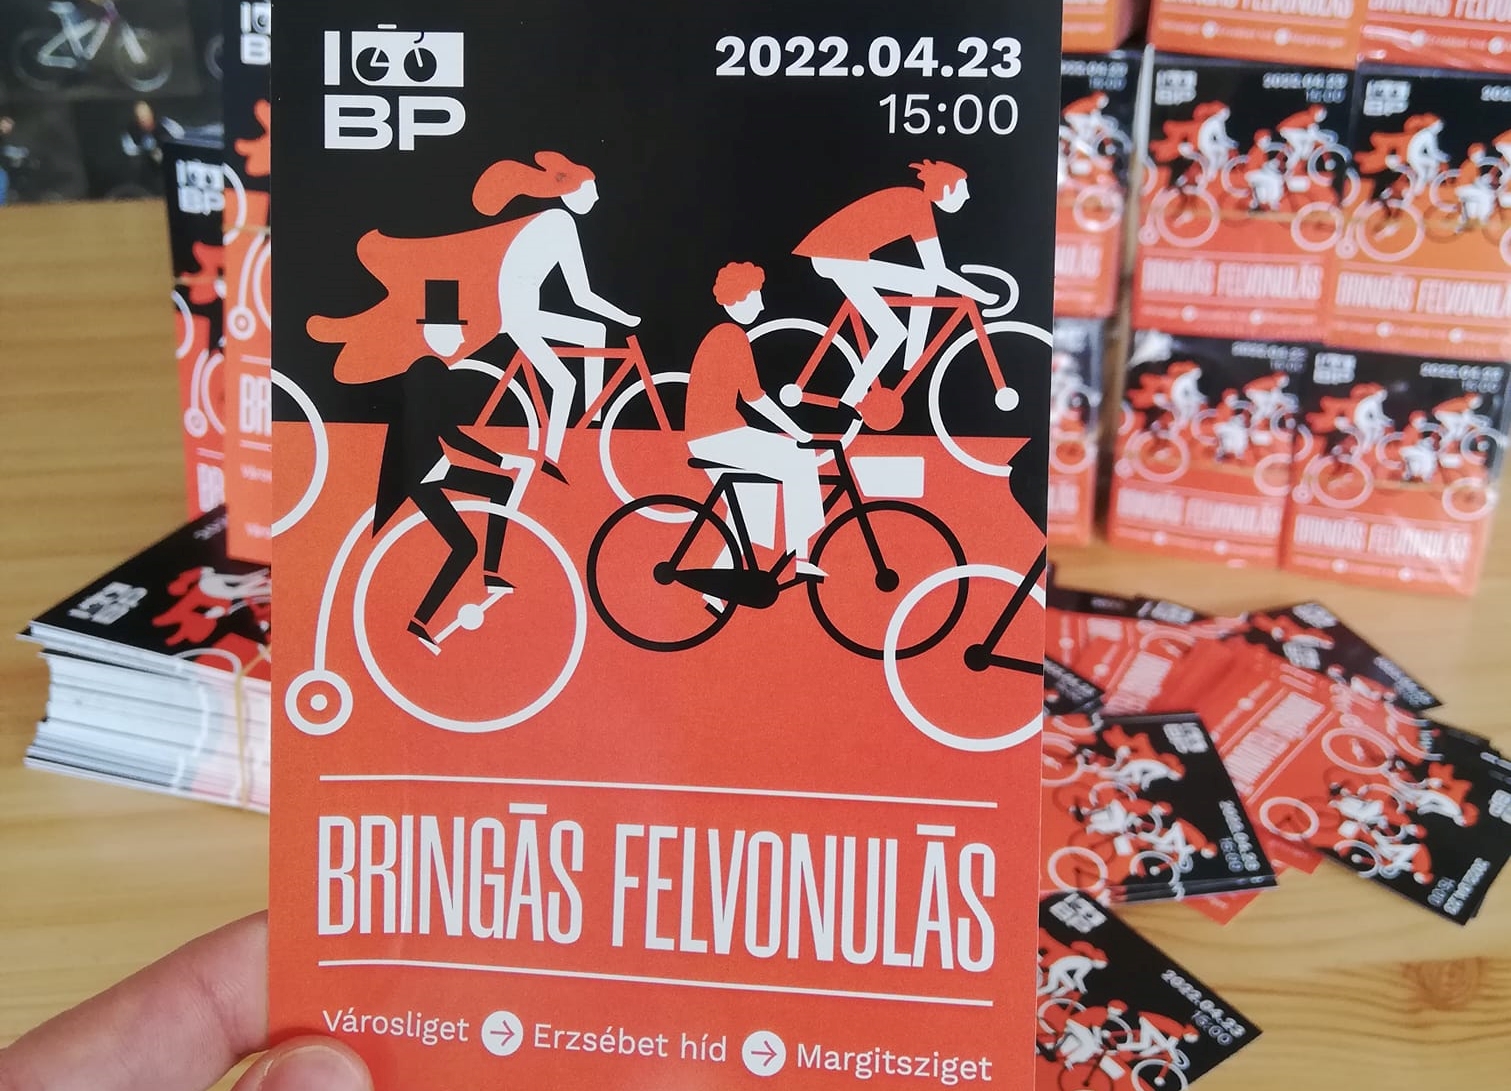 I bike Budapest matricaosztás - terjeszd velünk a felvonulás hírét!